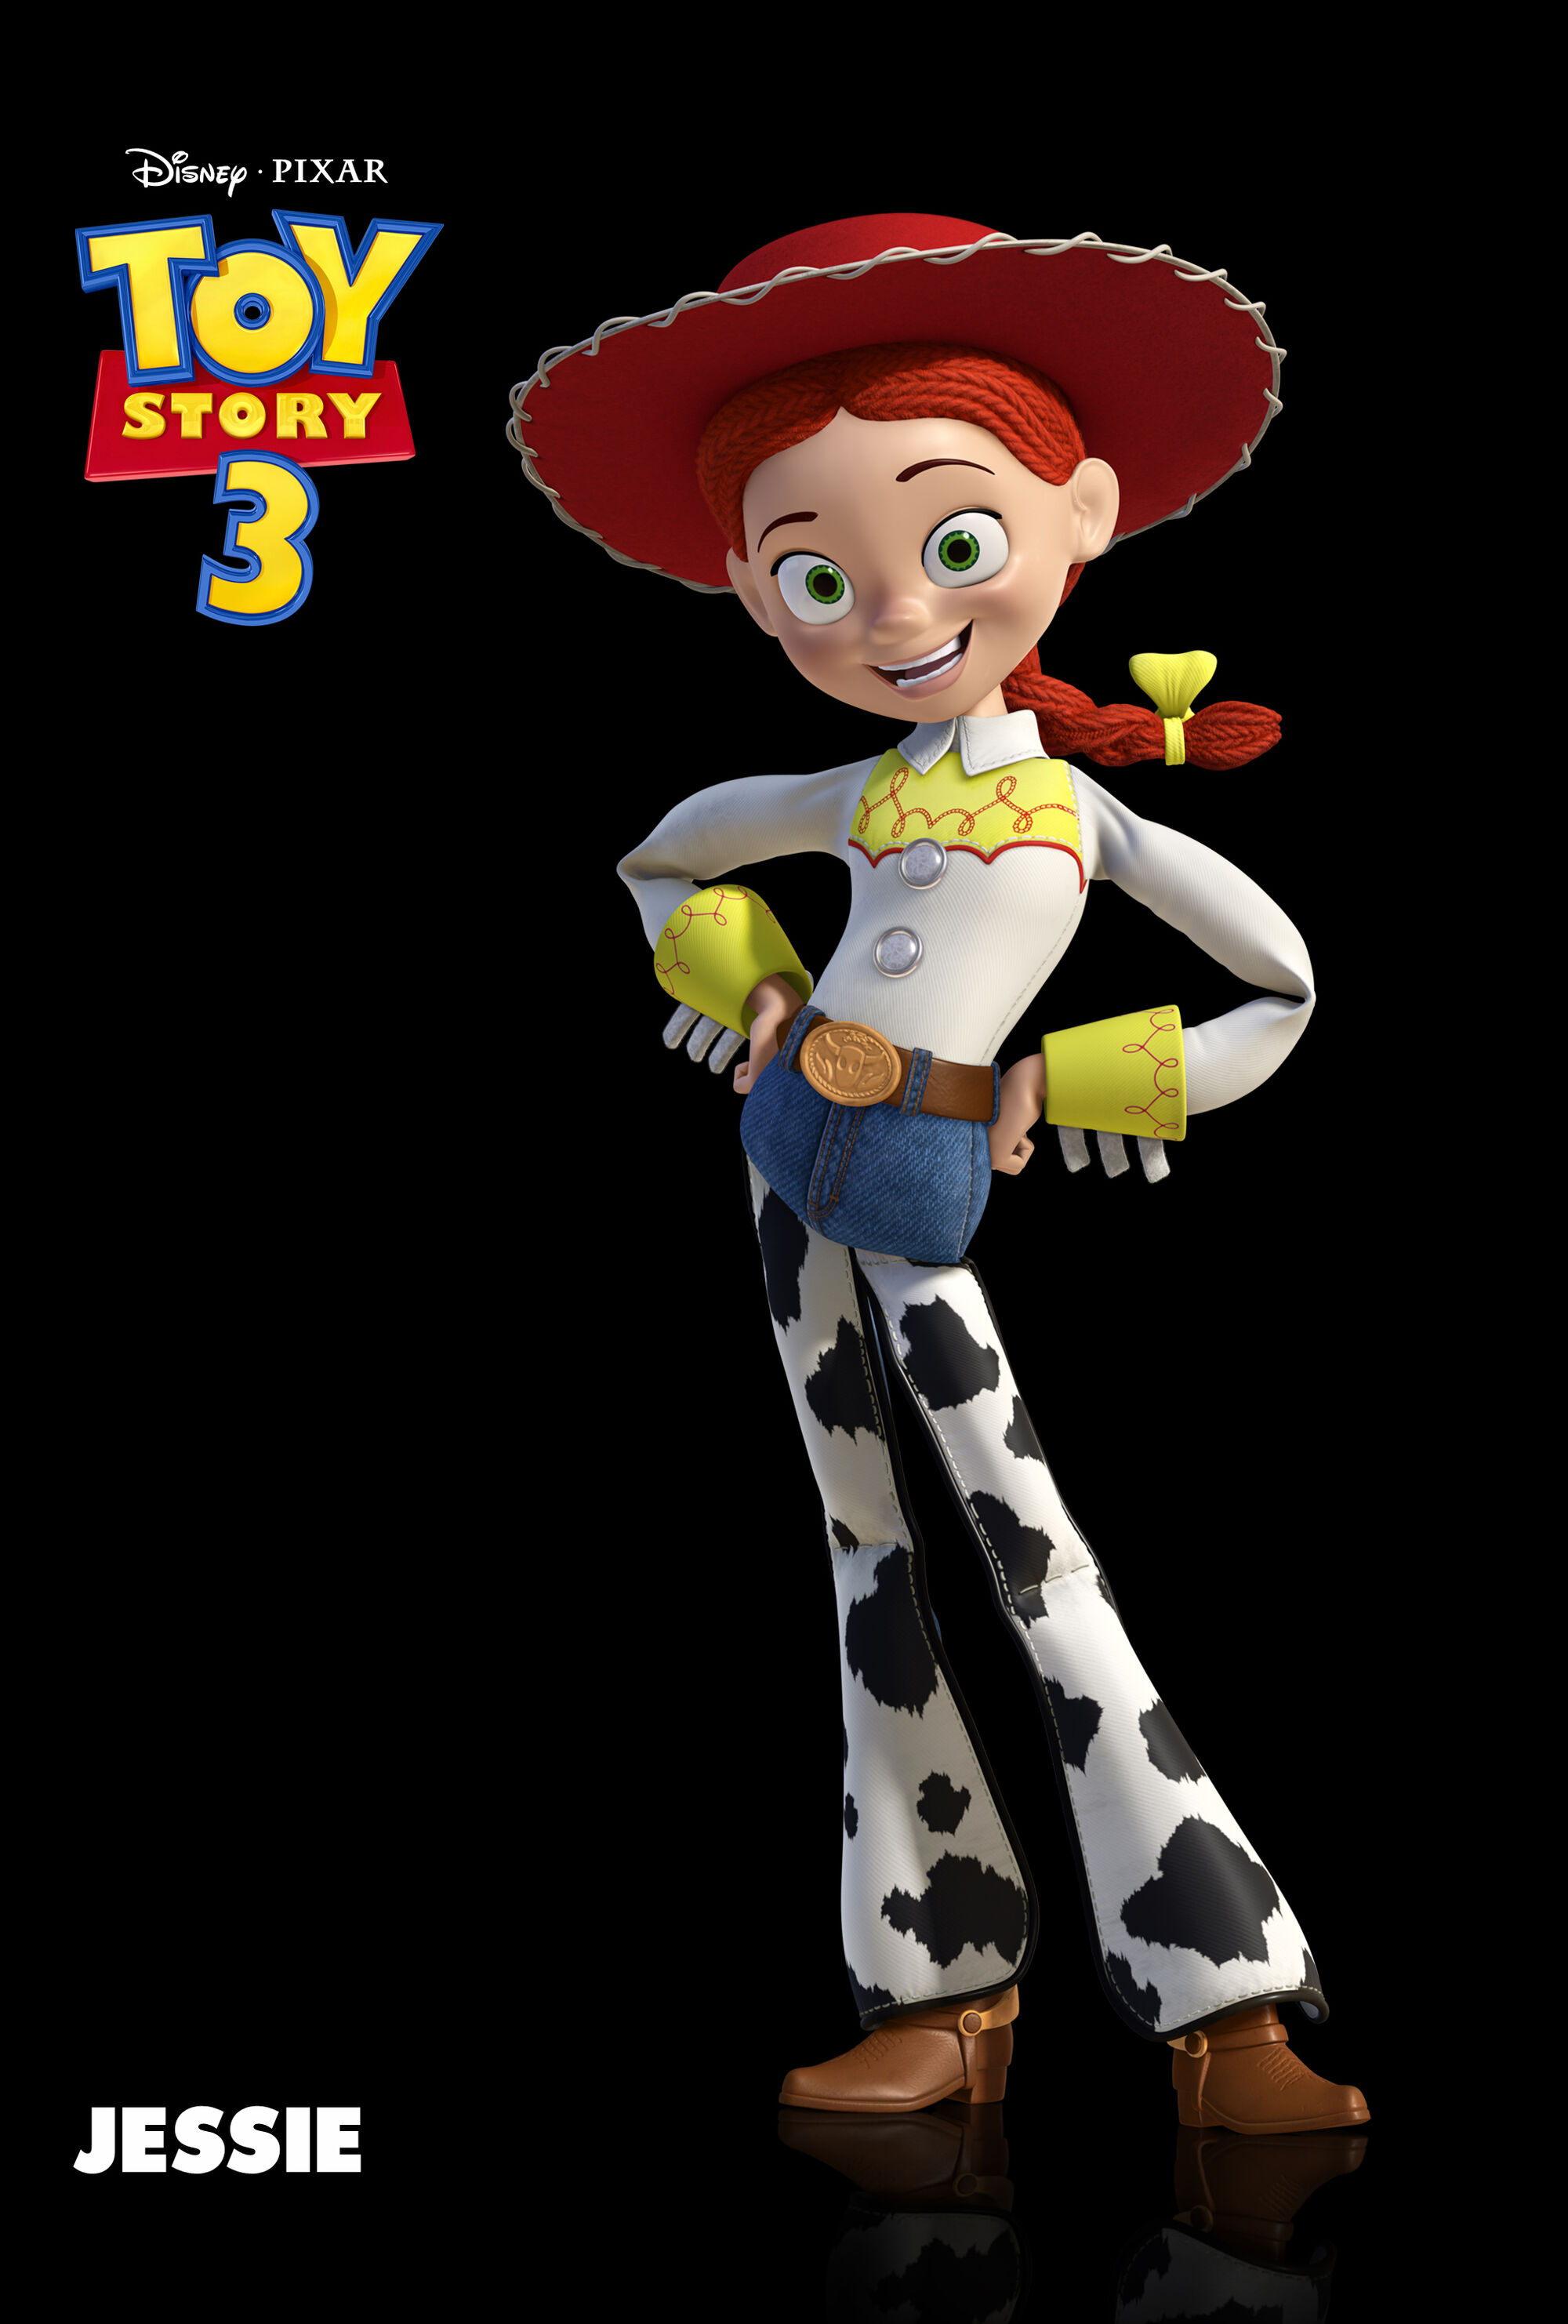 Image - Toy Story 3 - Jessie - Poster 2.jpg | Disney Wiki ...